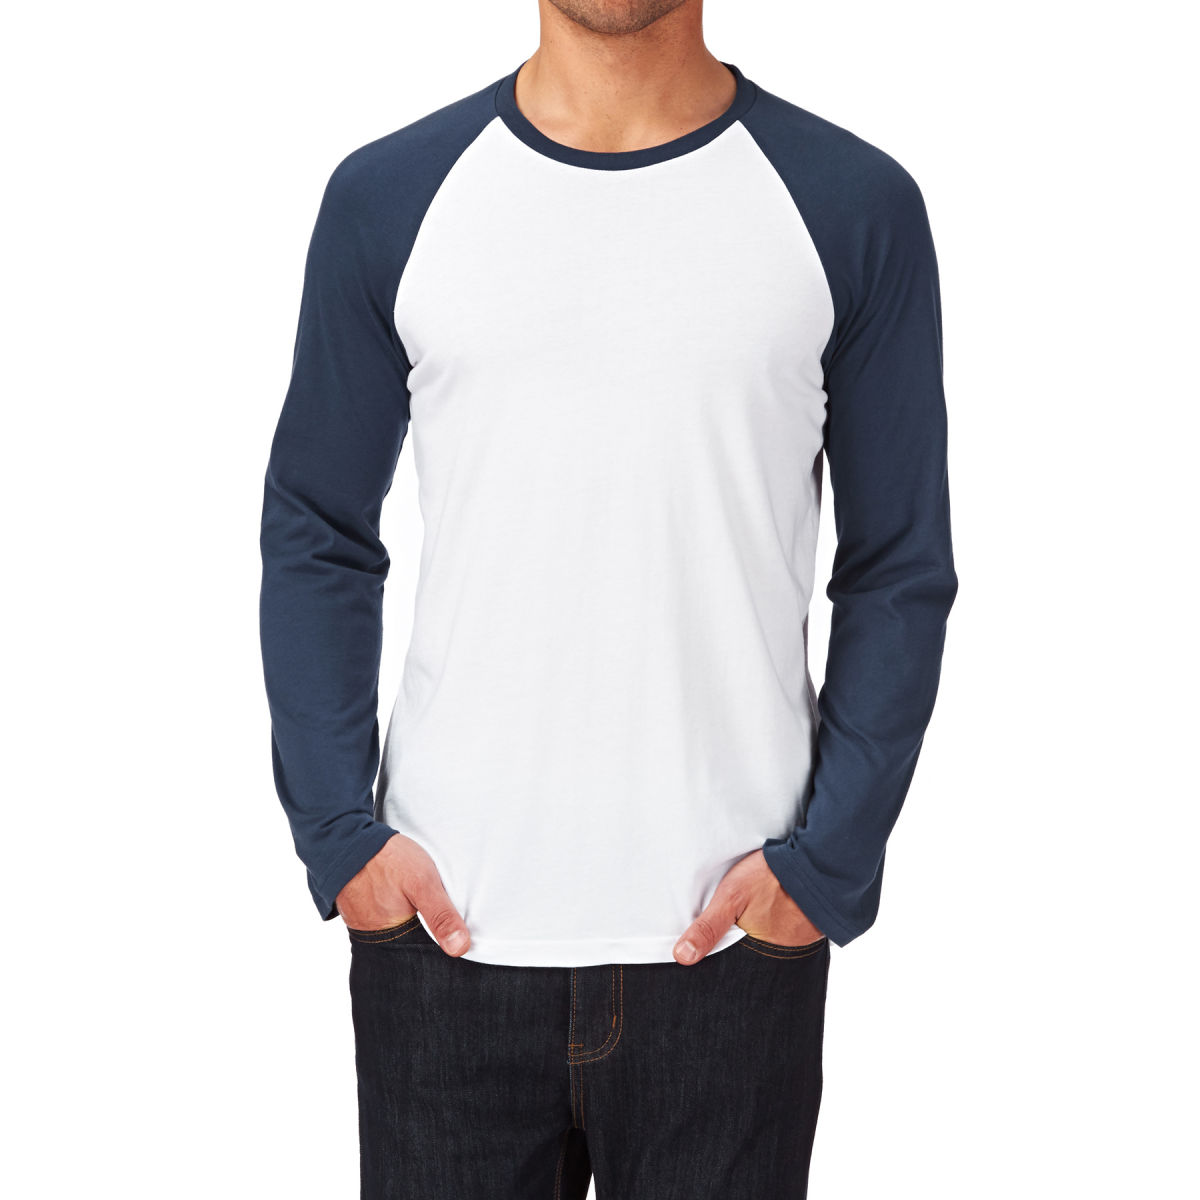 Long Sleeve T Shirts Dubai - Tshirts Printing Dubai